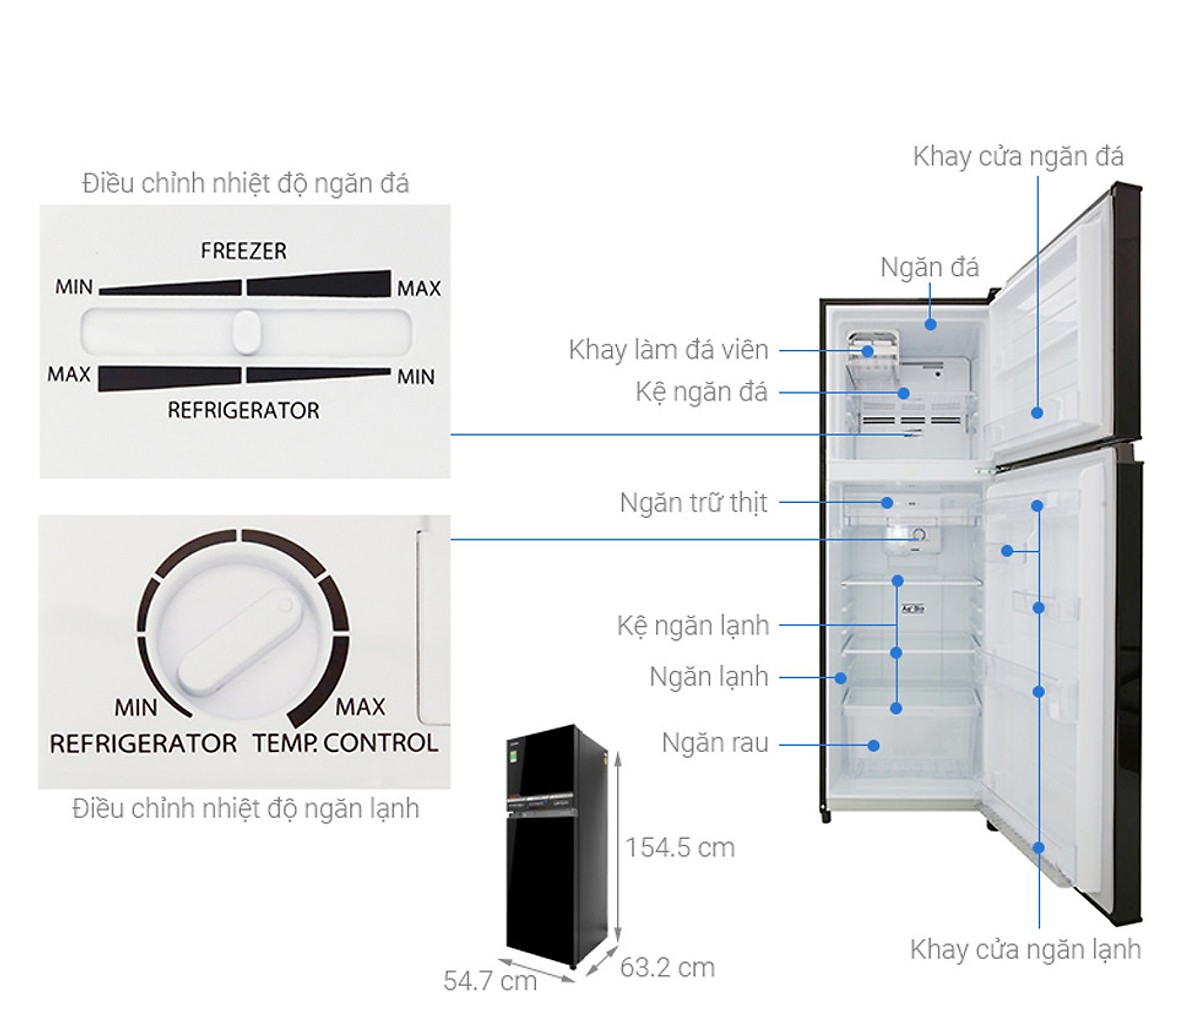 Tủ Lạnh Toshiba Inverter 233 lít GR-A28VM UKG - Hàng Chính Hãng + Tặng Bình Đun Siêu Tốc